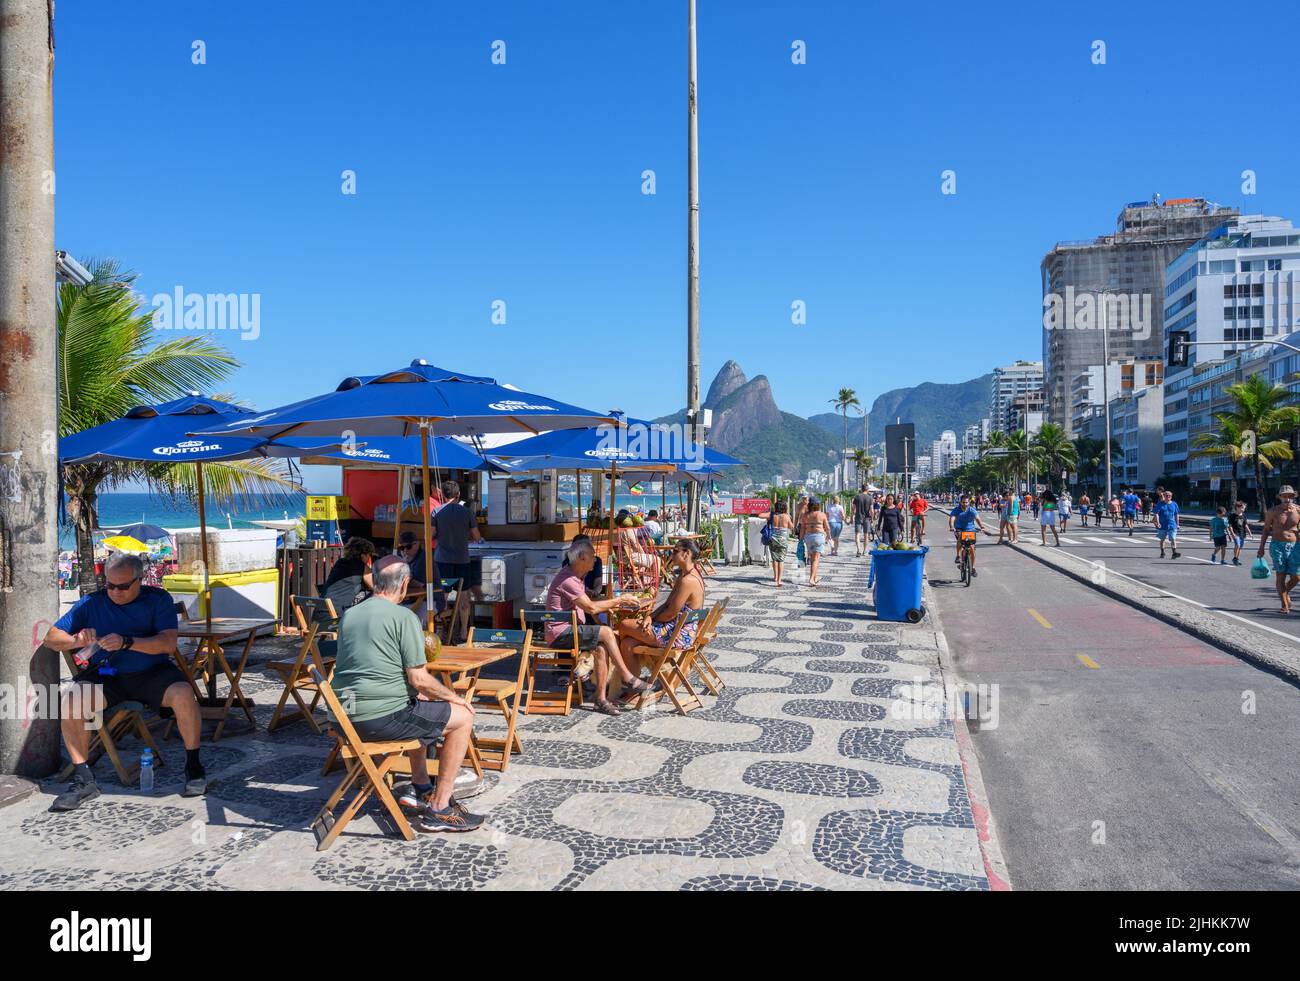 Quiosco en el paseo marítimo, Avenida Vieira Souto, Ipanema, Río de Janeiro, Brasil Foto de stock